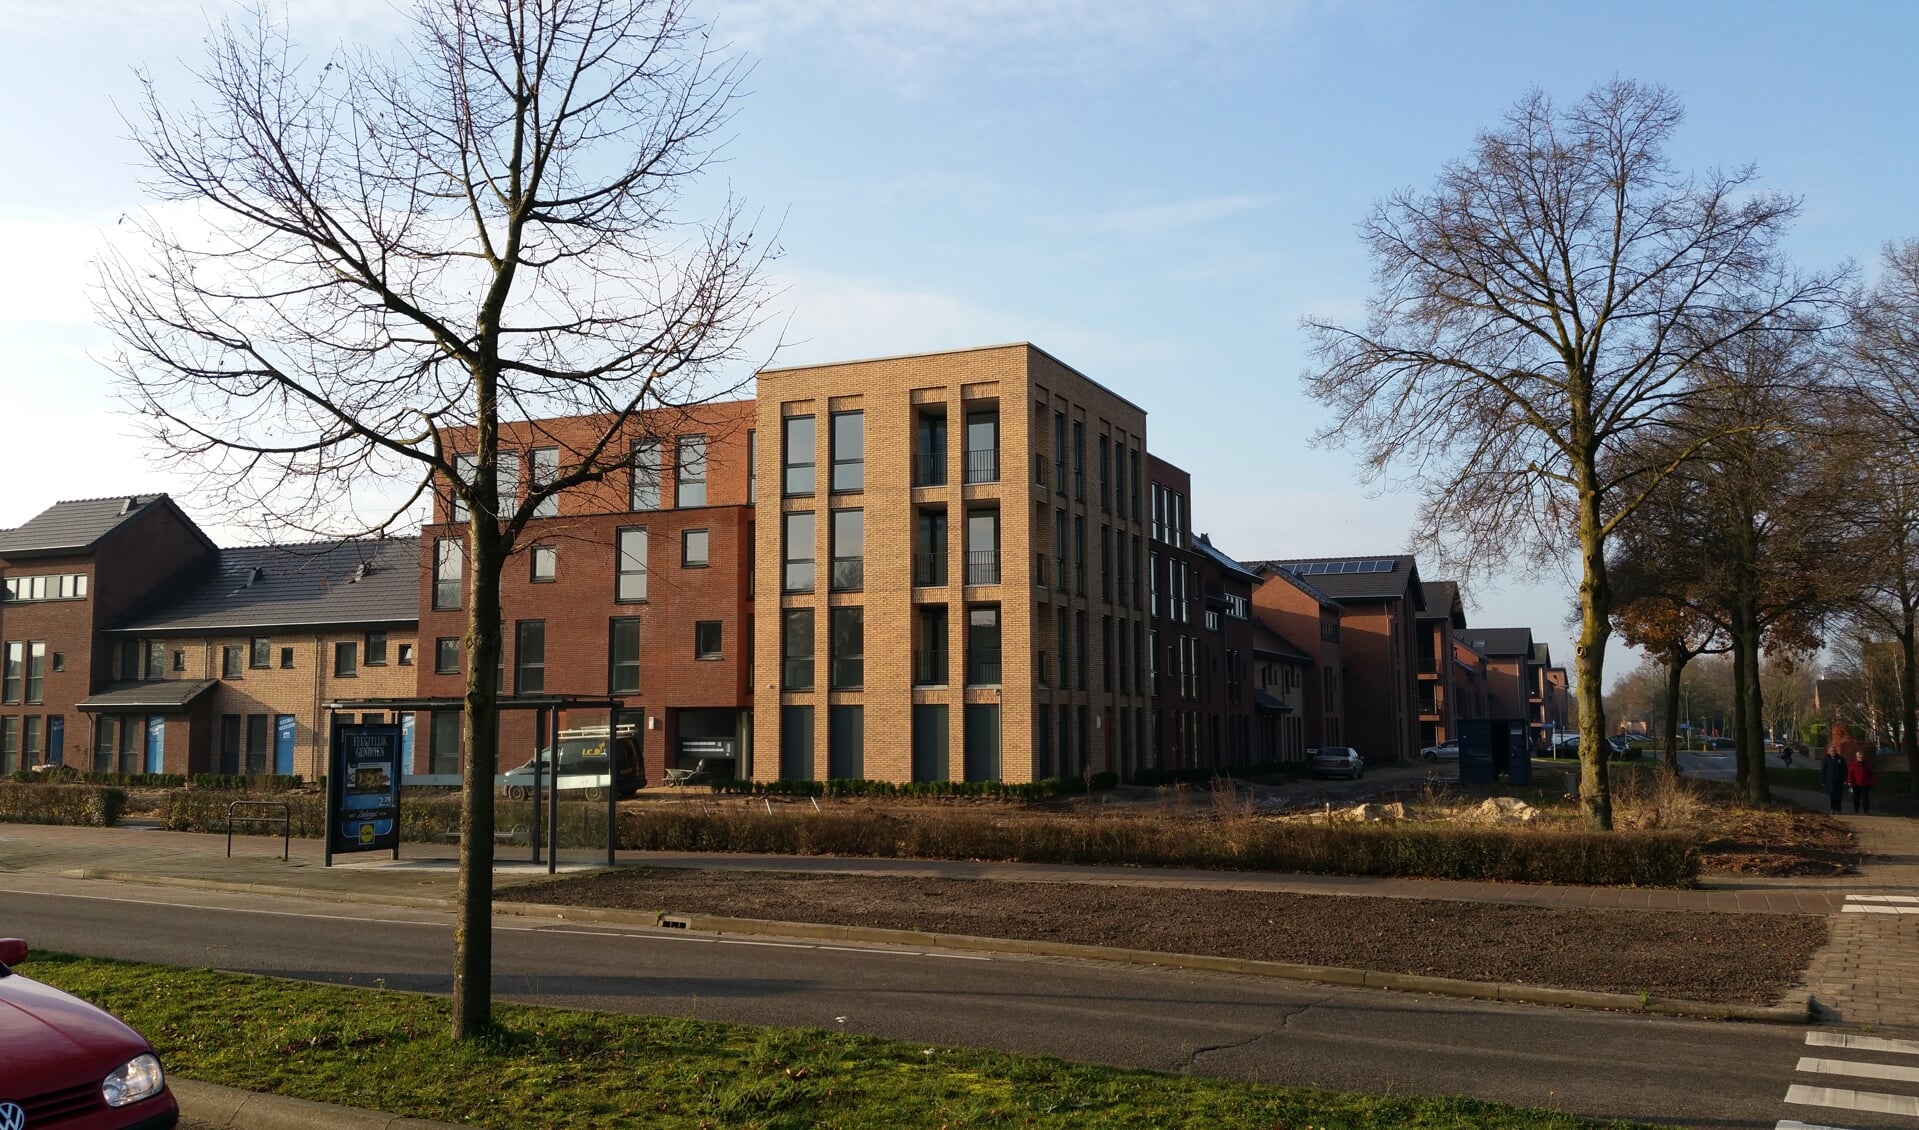 Mooiland verhuurt onder meer appartementen in de wijk Hofstede Elderom in Boxmeer.